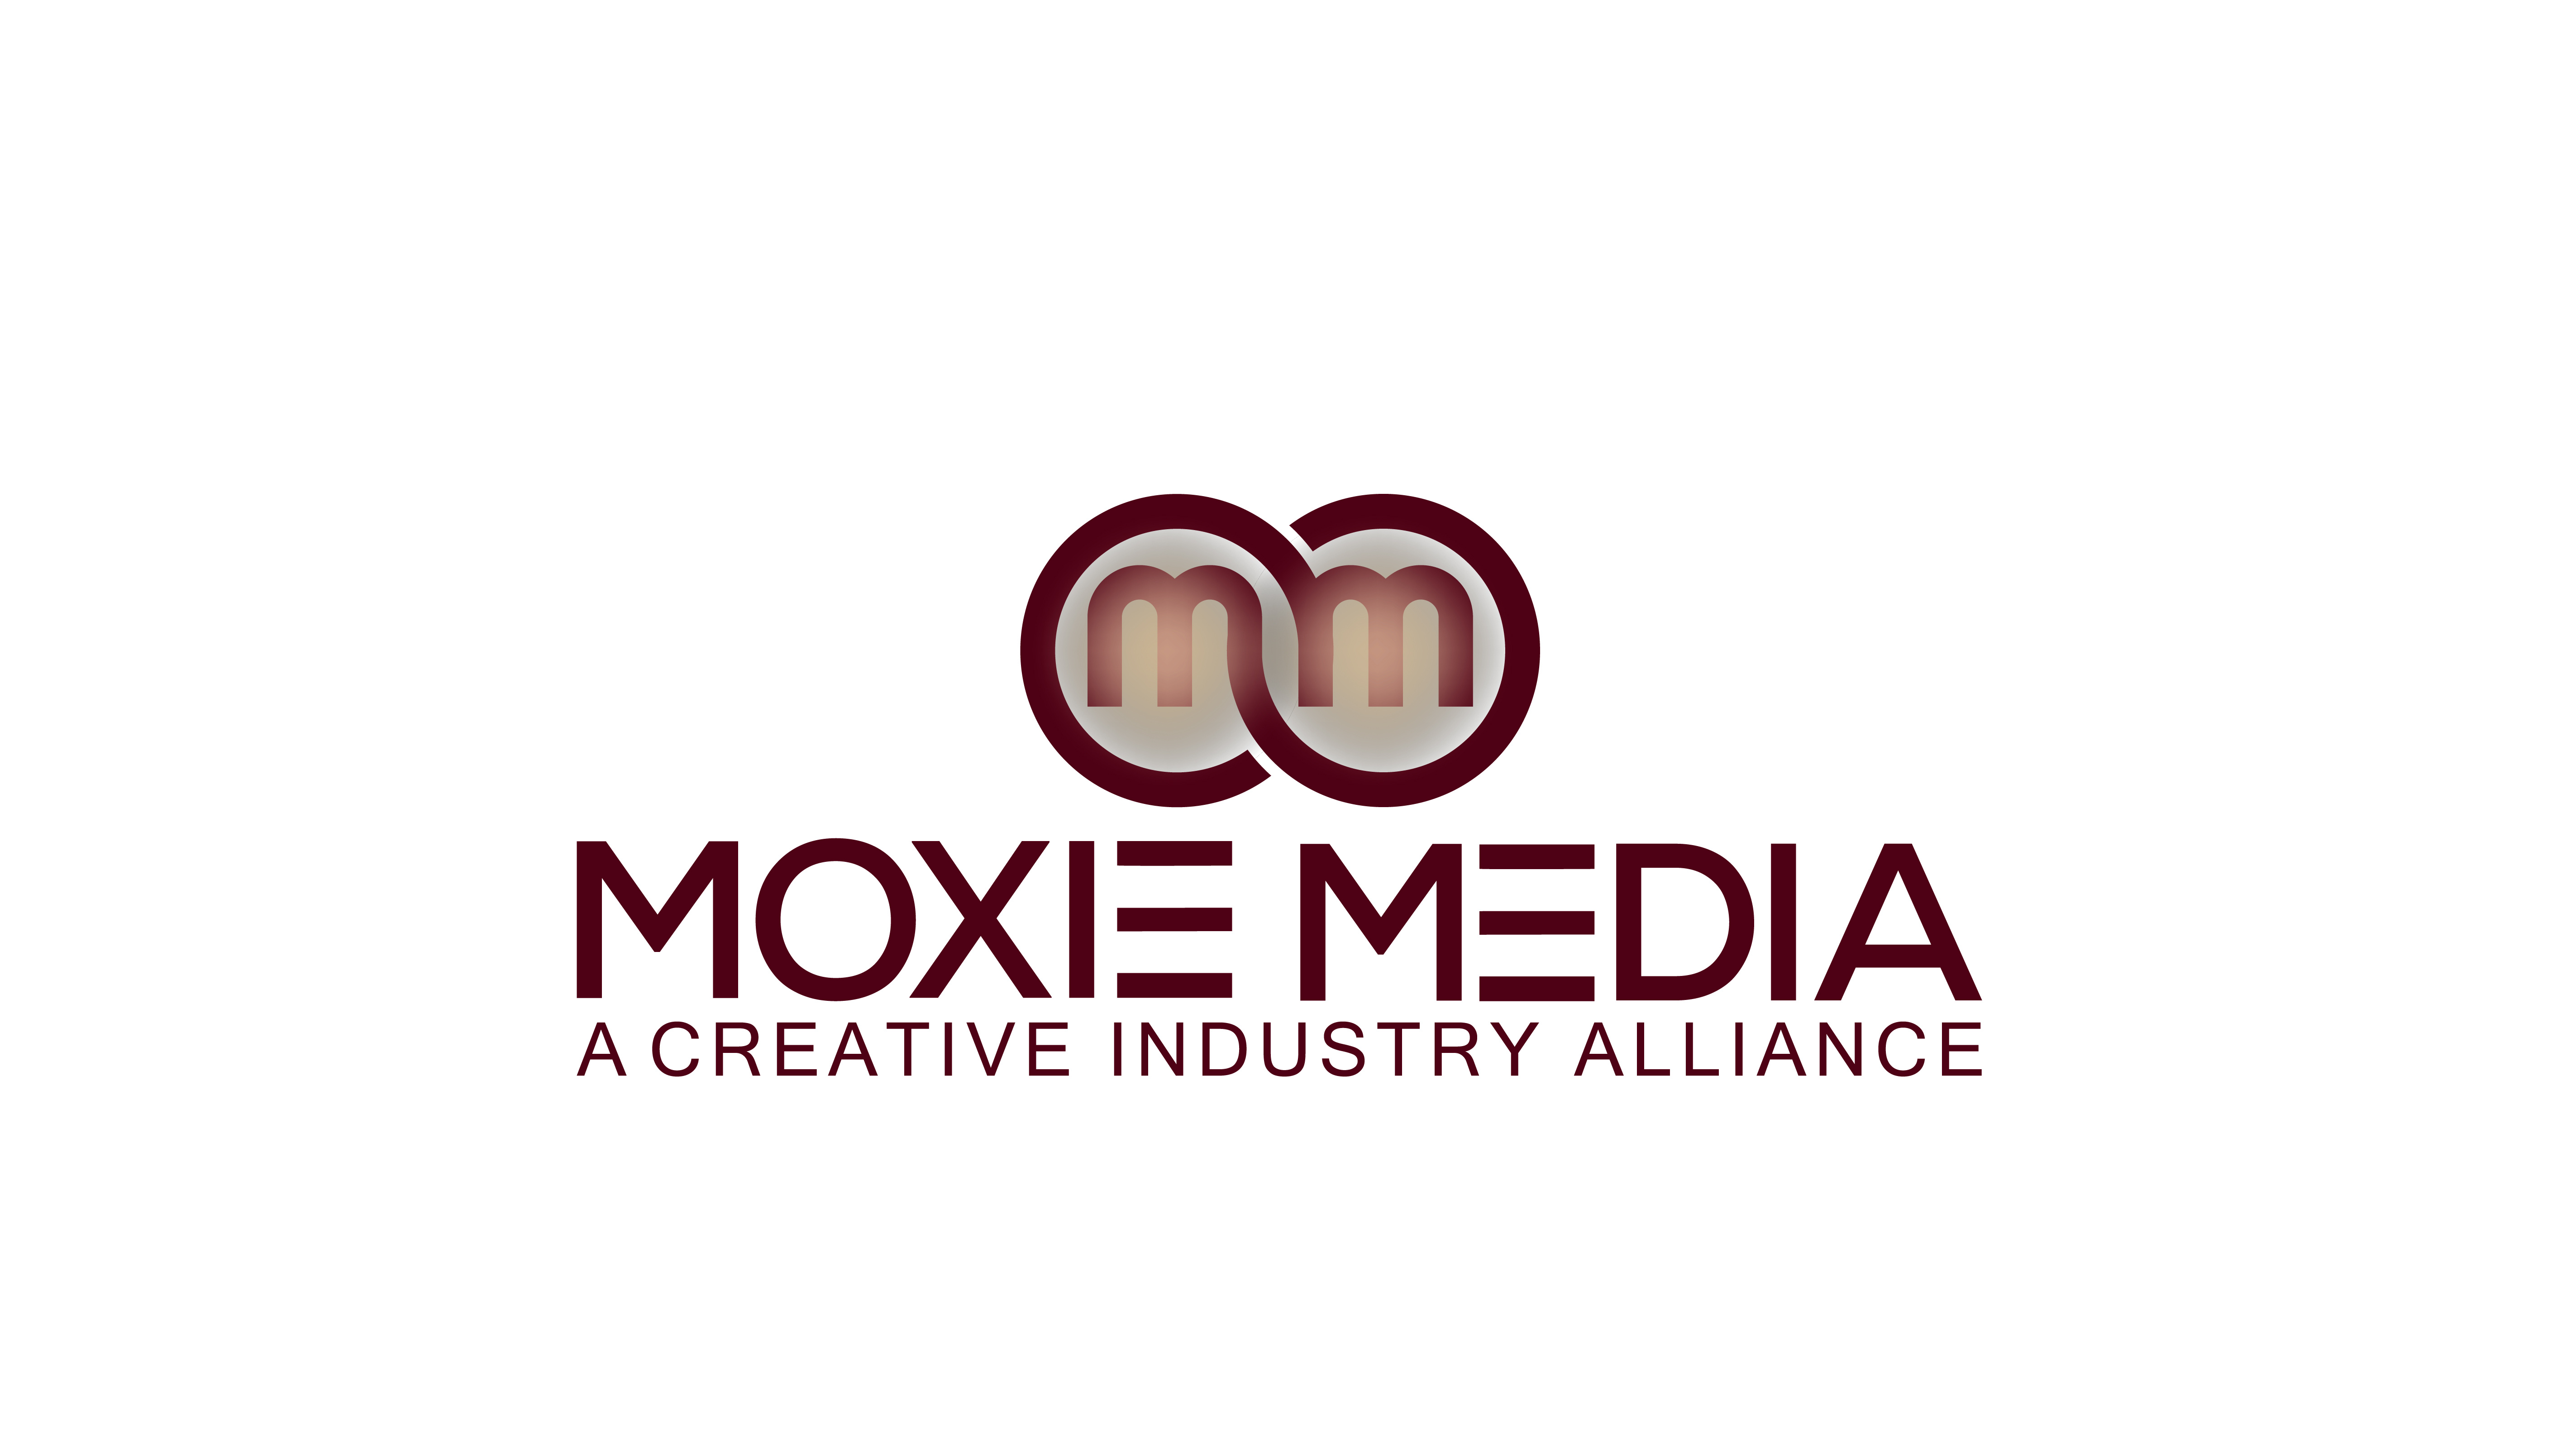 Moxie Media Logo by sahin miah on Dribbble